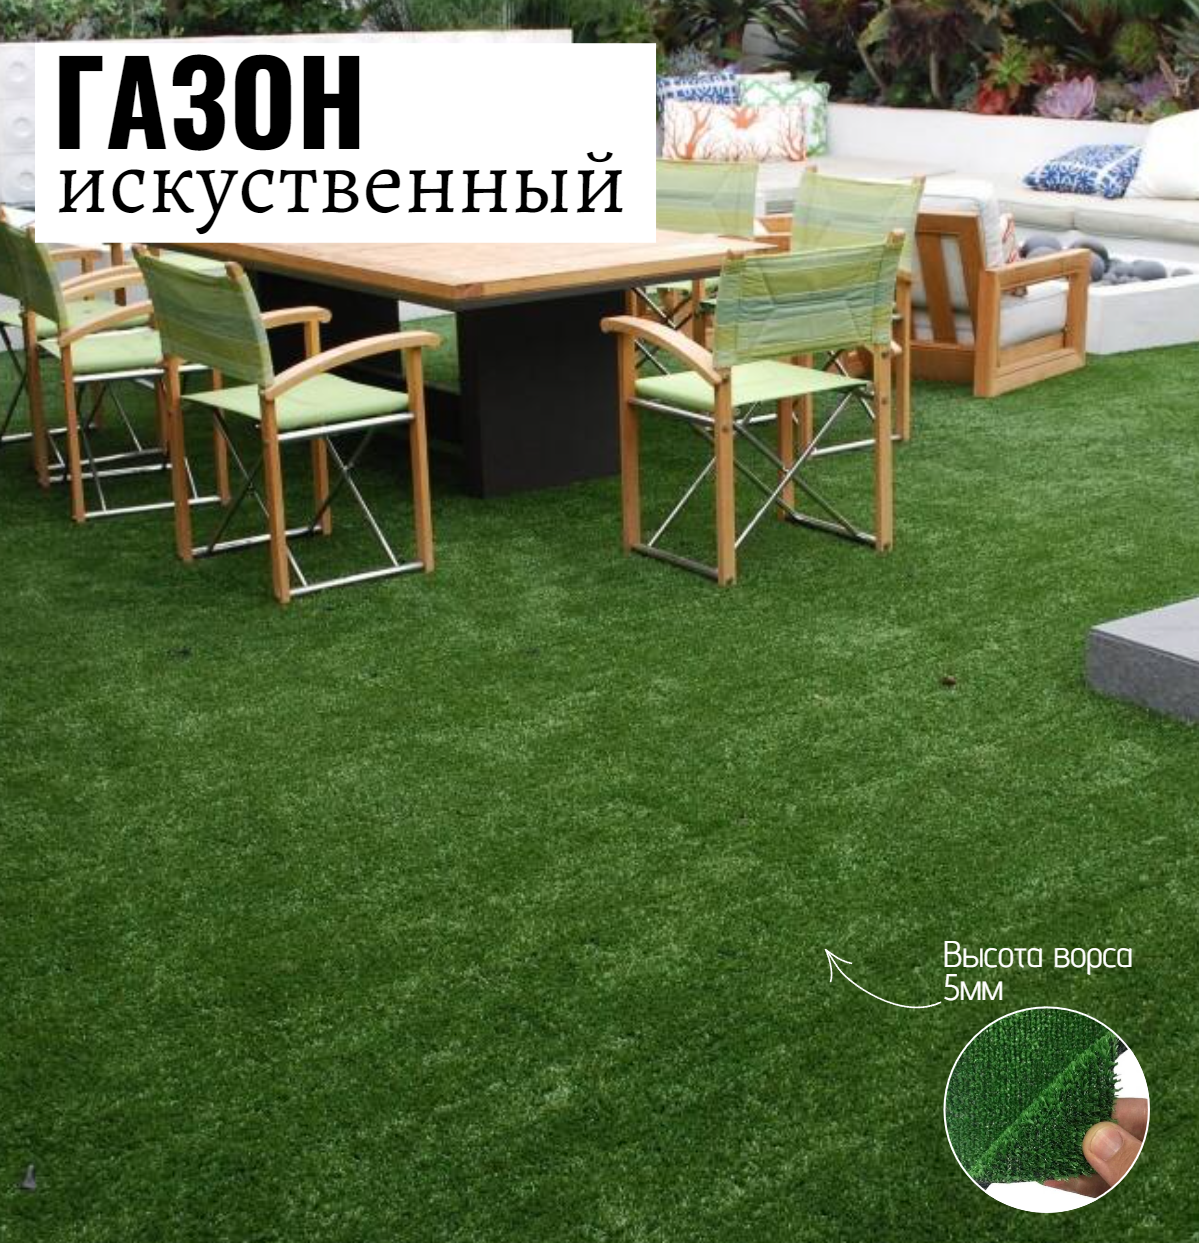 Искусственный газон Салон Ковров газон gzn-2-038 1 шт. 2х3.8м